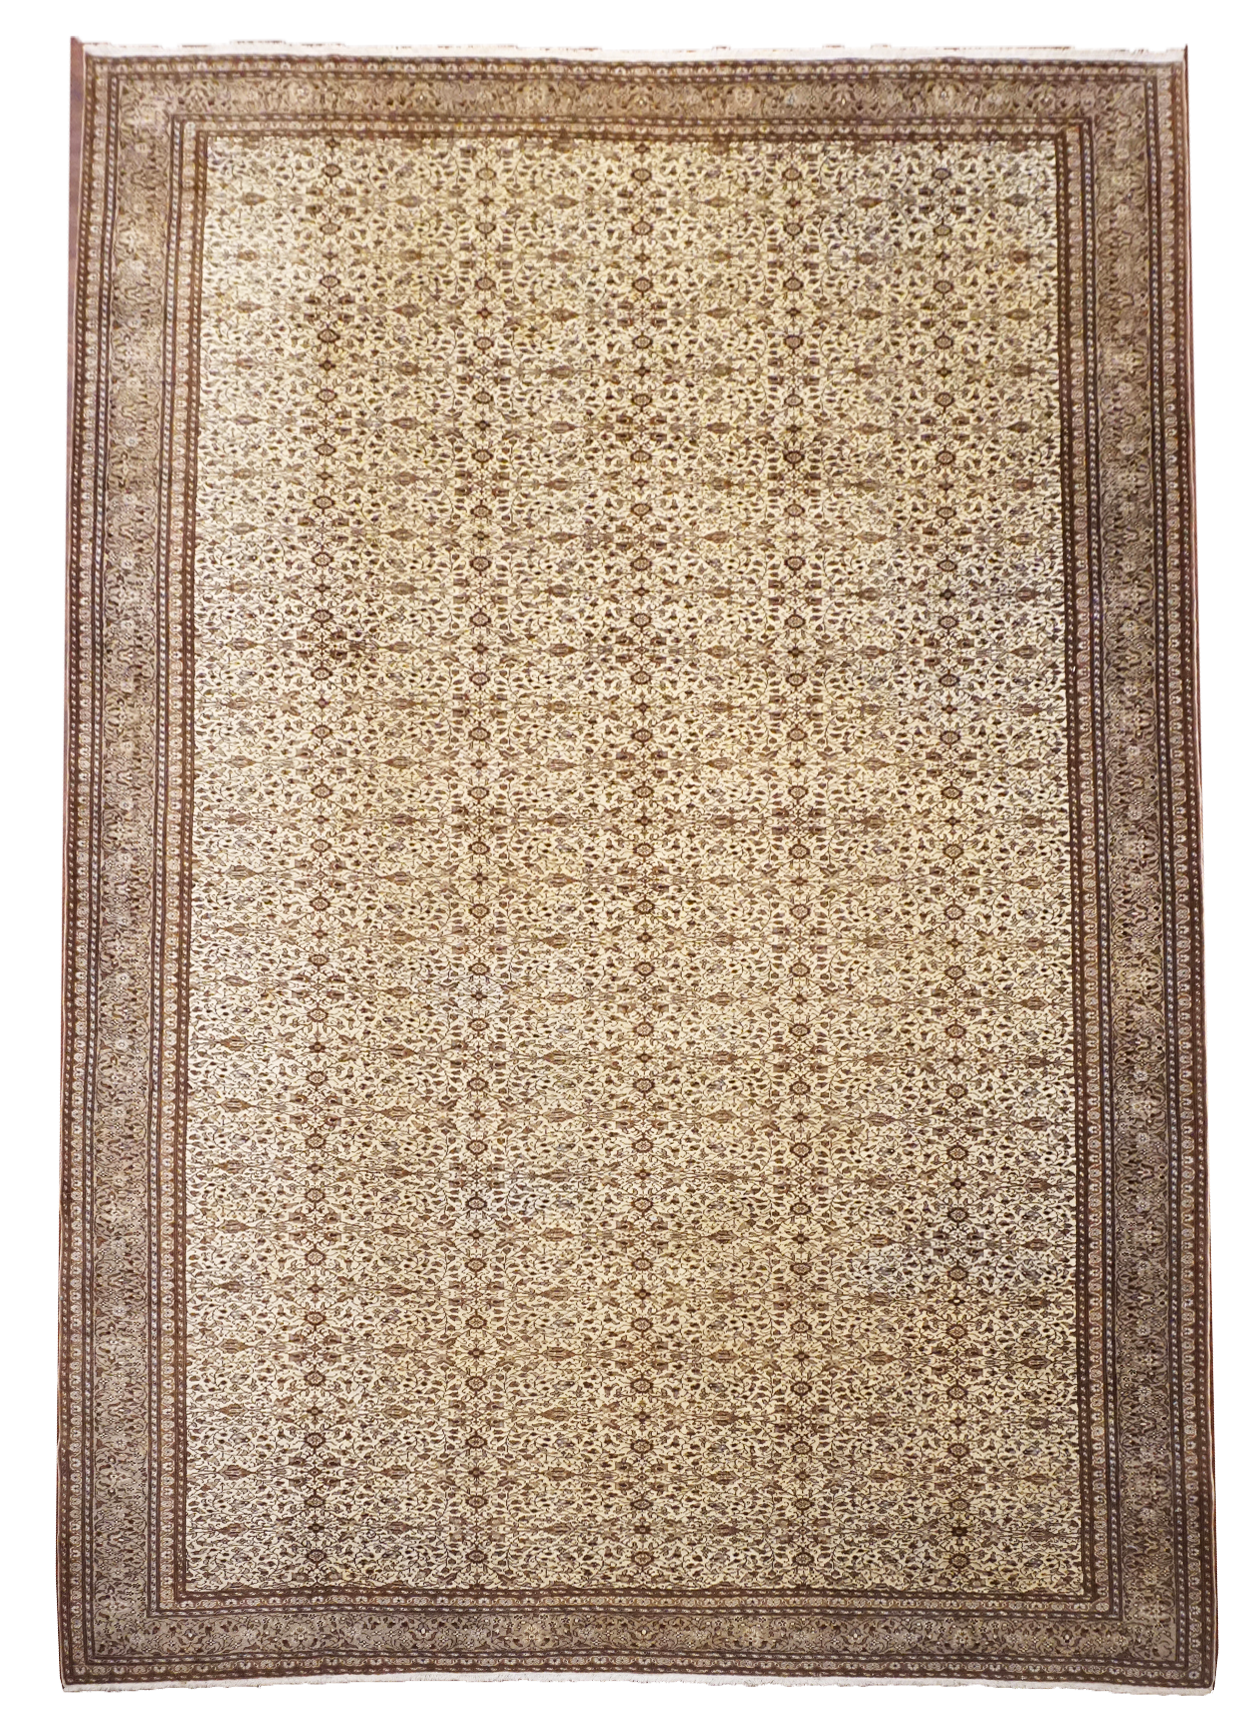 11X15 Antique Fine Turkish Sivas Rug, circa 1930